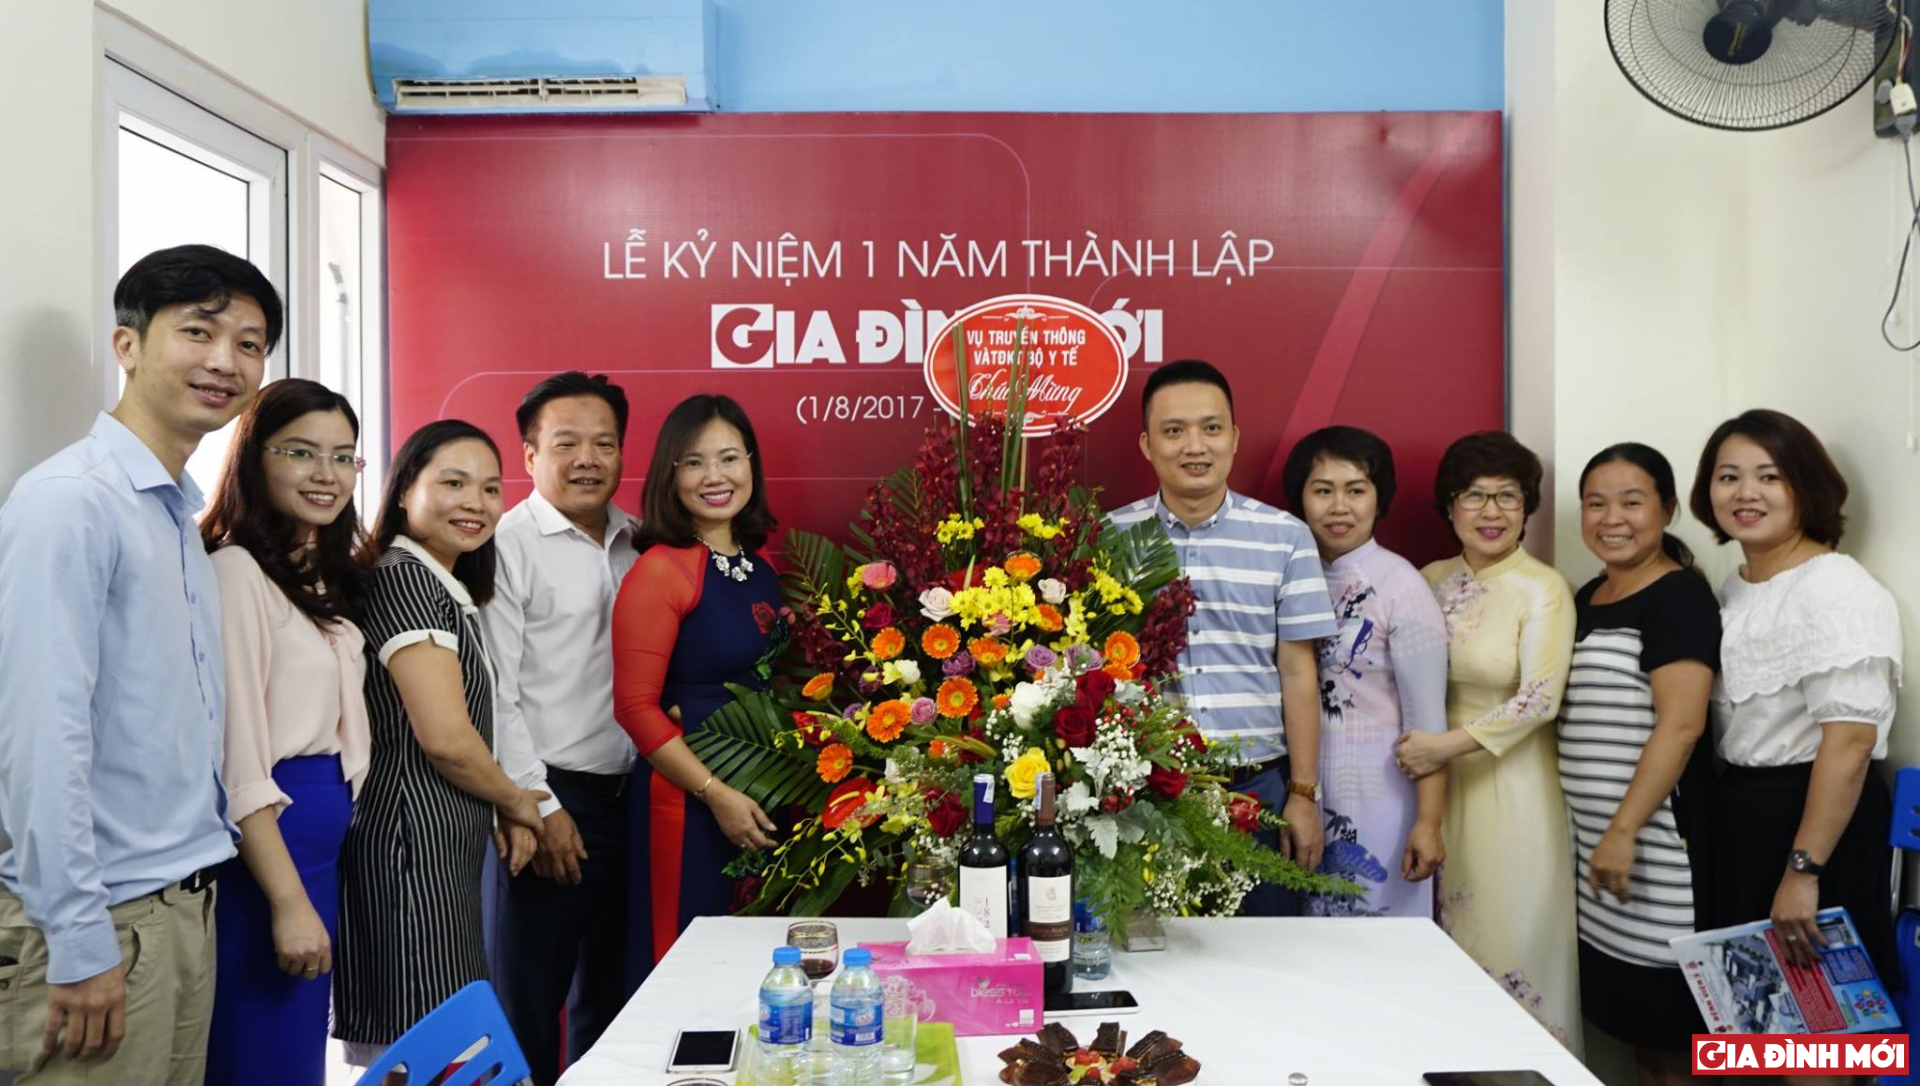 Vụ truyền thông và thi đua khen thưởng Bộ Y tế thăm và tặng hoa cho Tạp chí điện tử Gia Đình Mới 